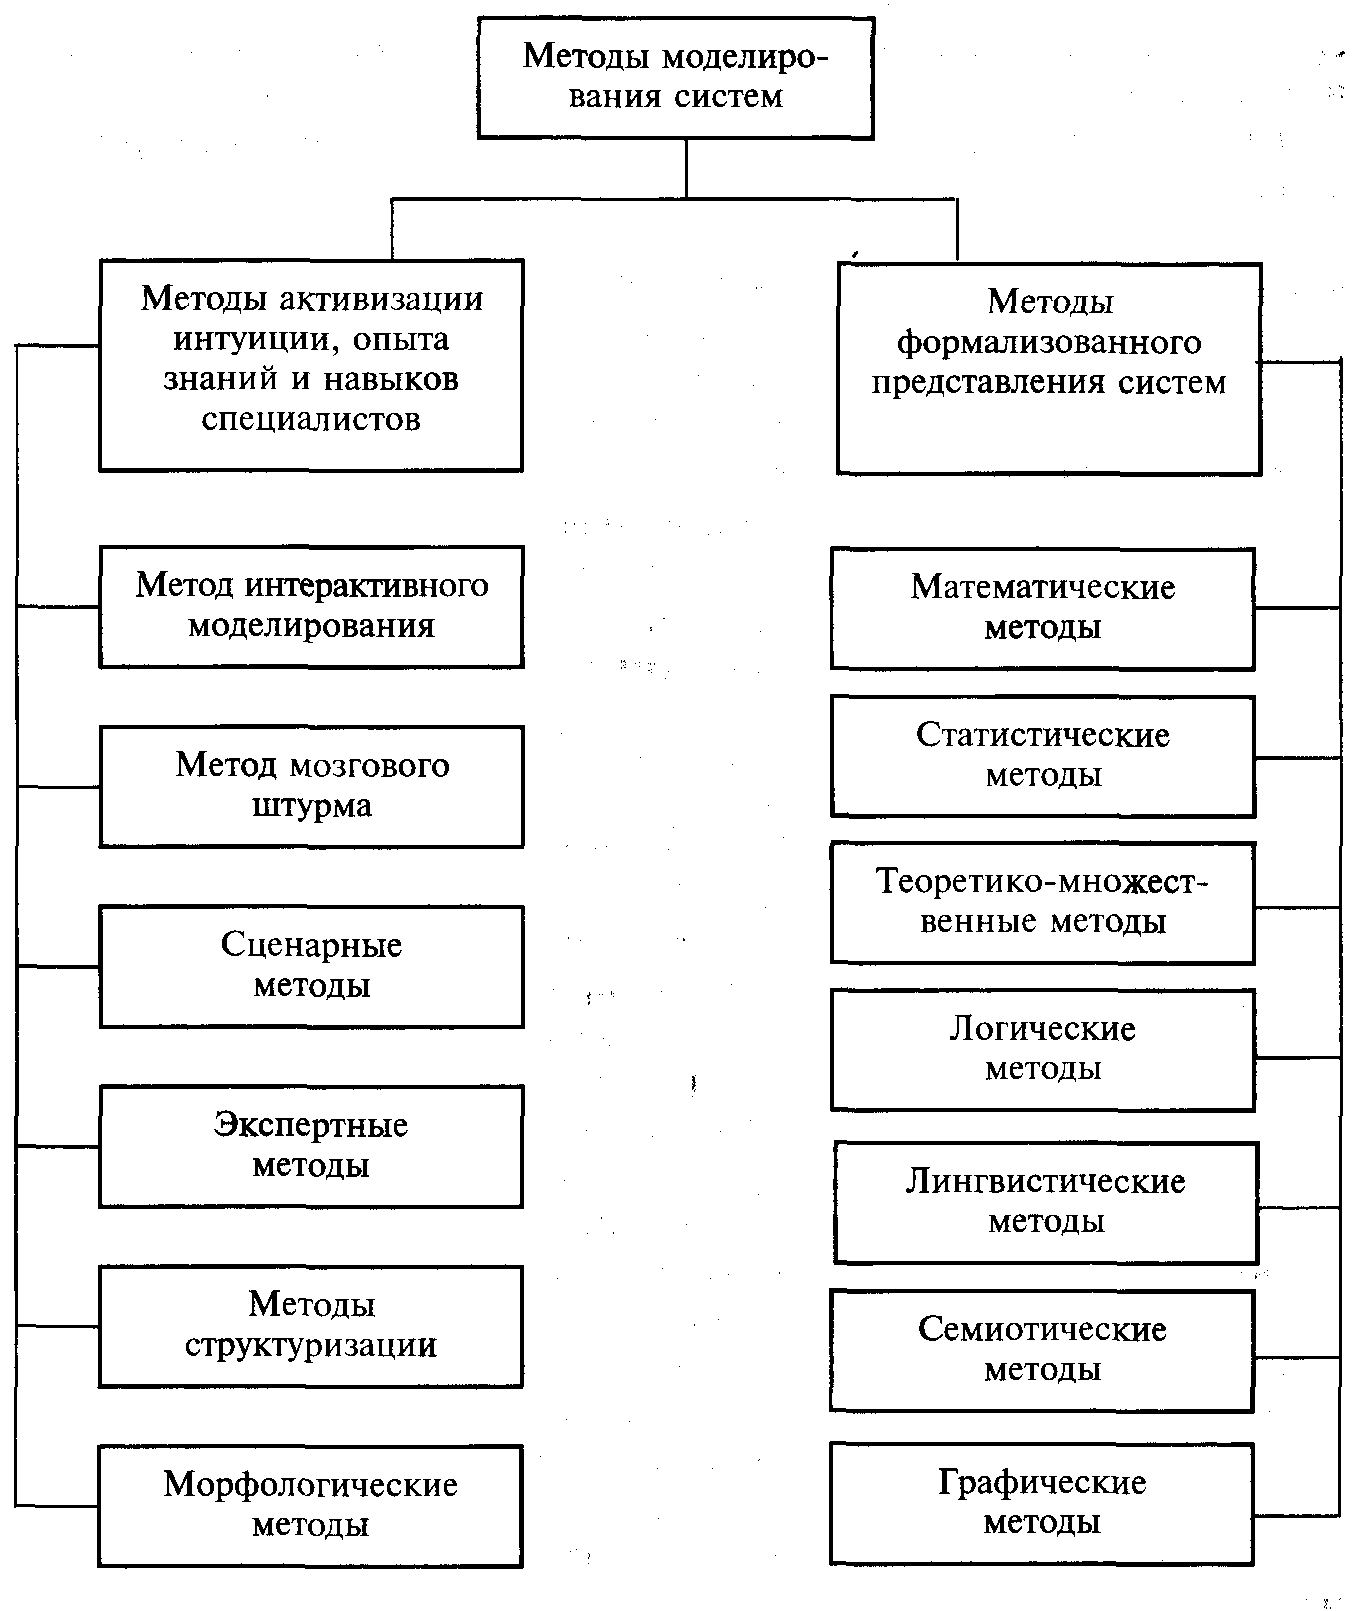 Методов формализованного представления системы управления